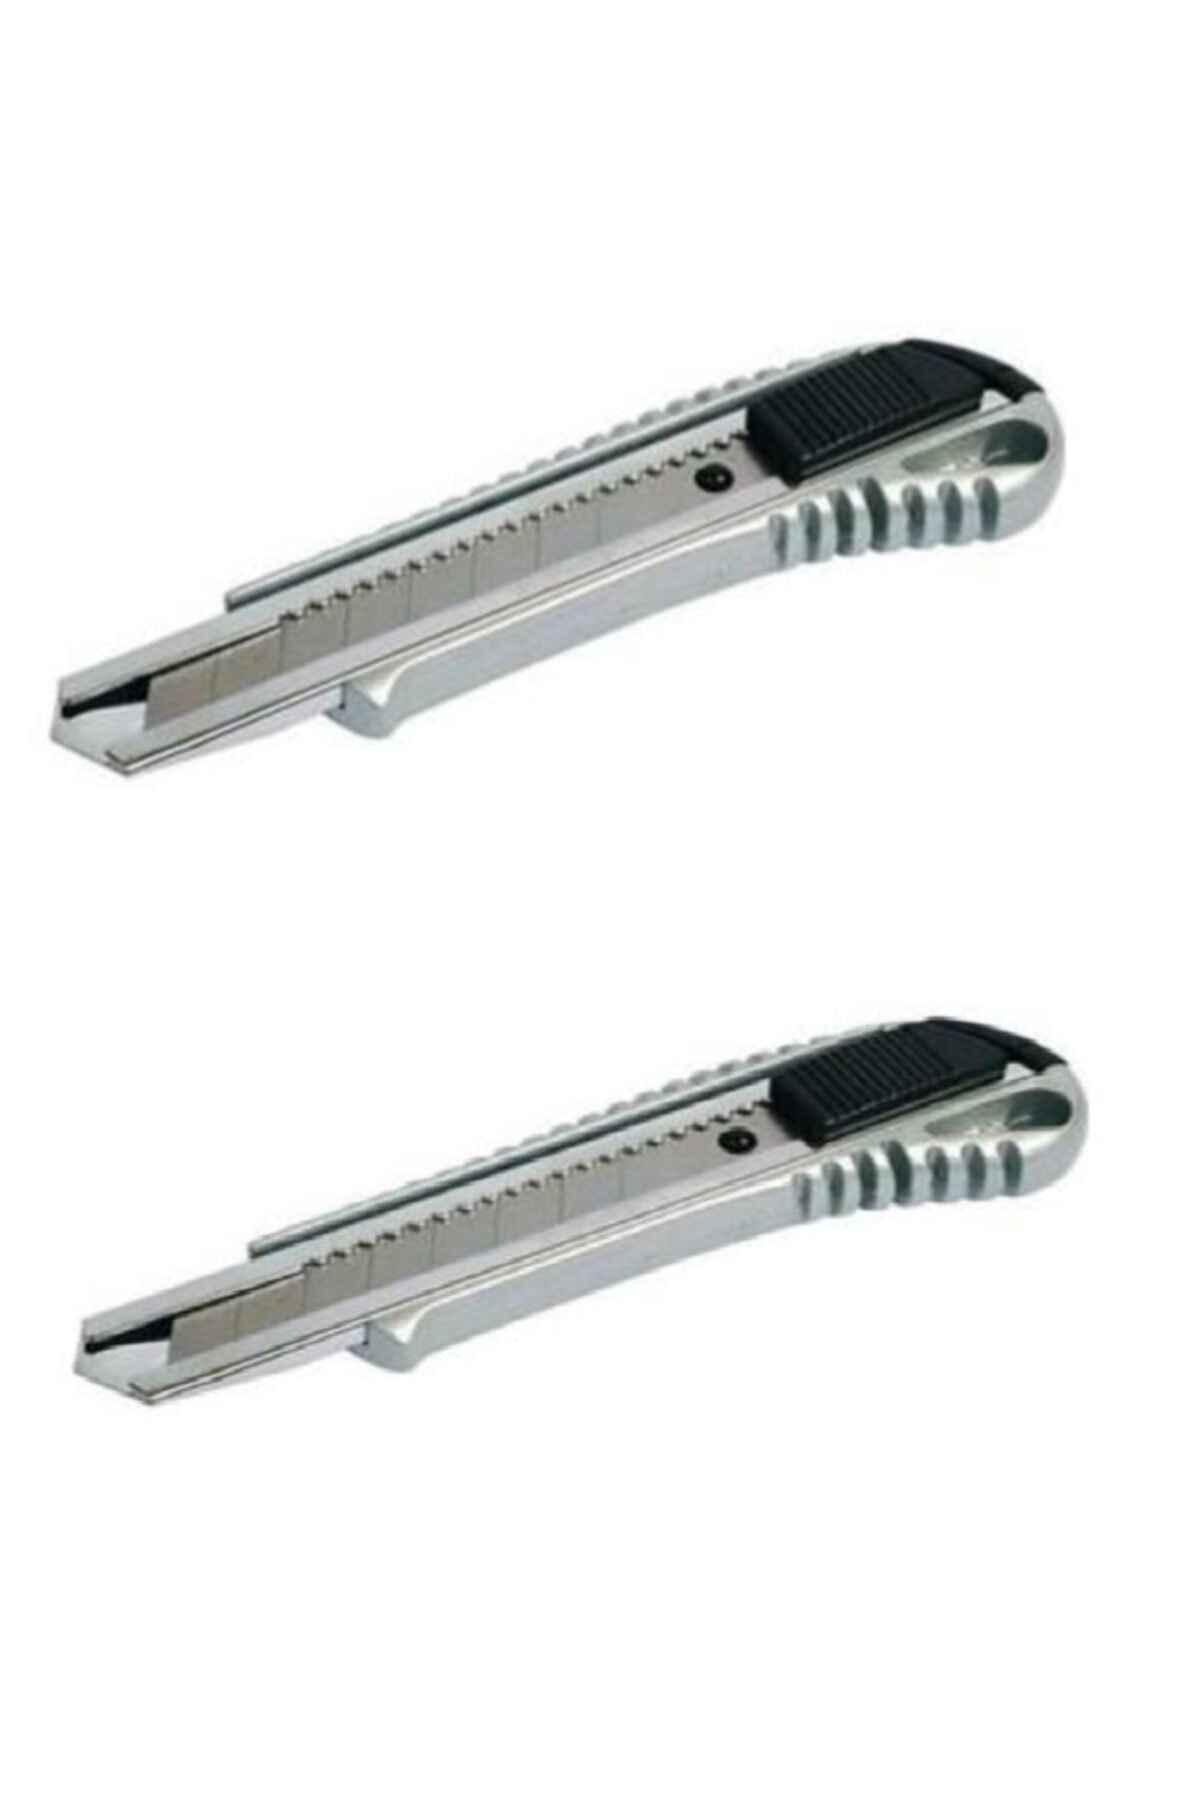 garaccu Ünyepark 2 Li Metal Paslanmaz Çelik Uç Değiştirilebilir Maket Bıçağı 2 Adet Fiyatıdır